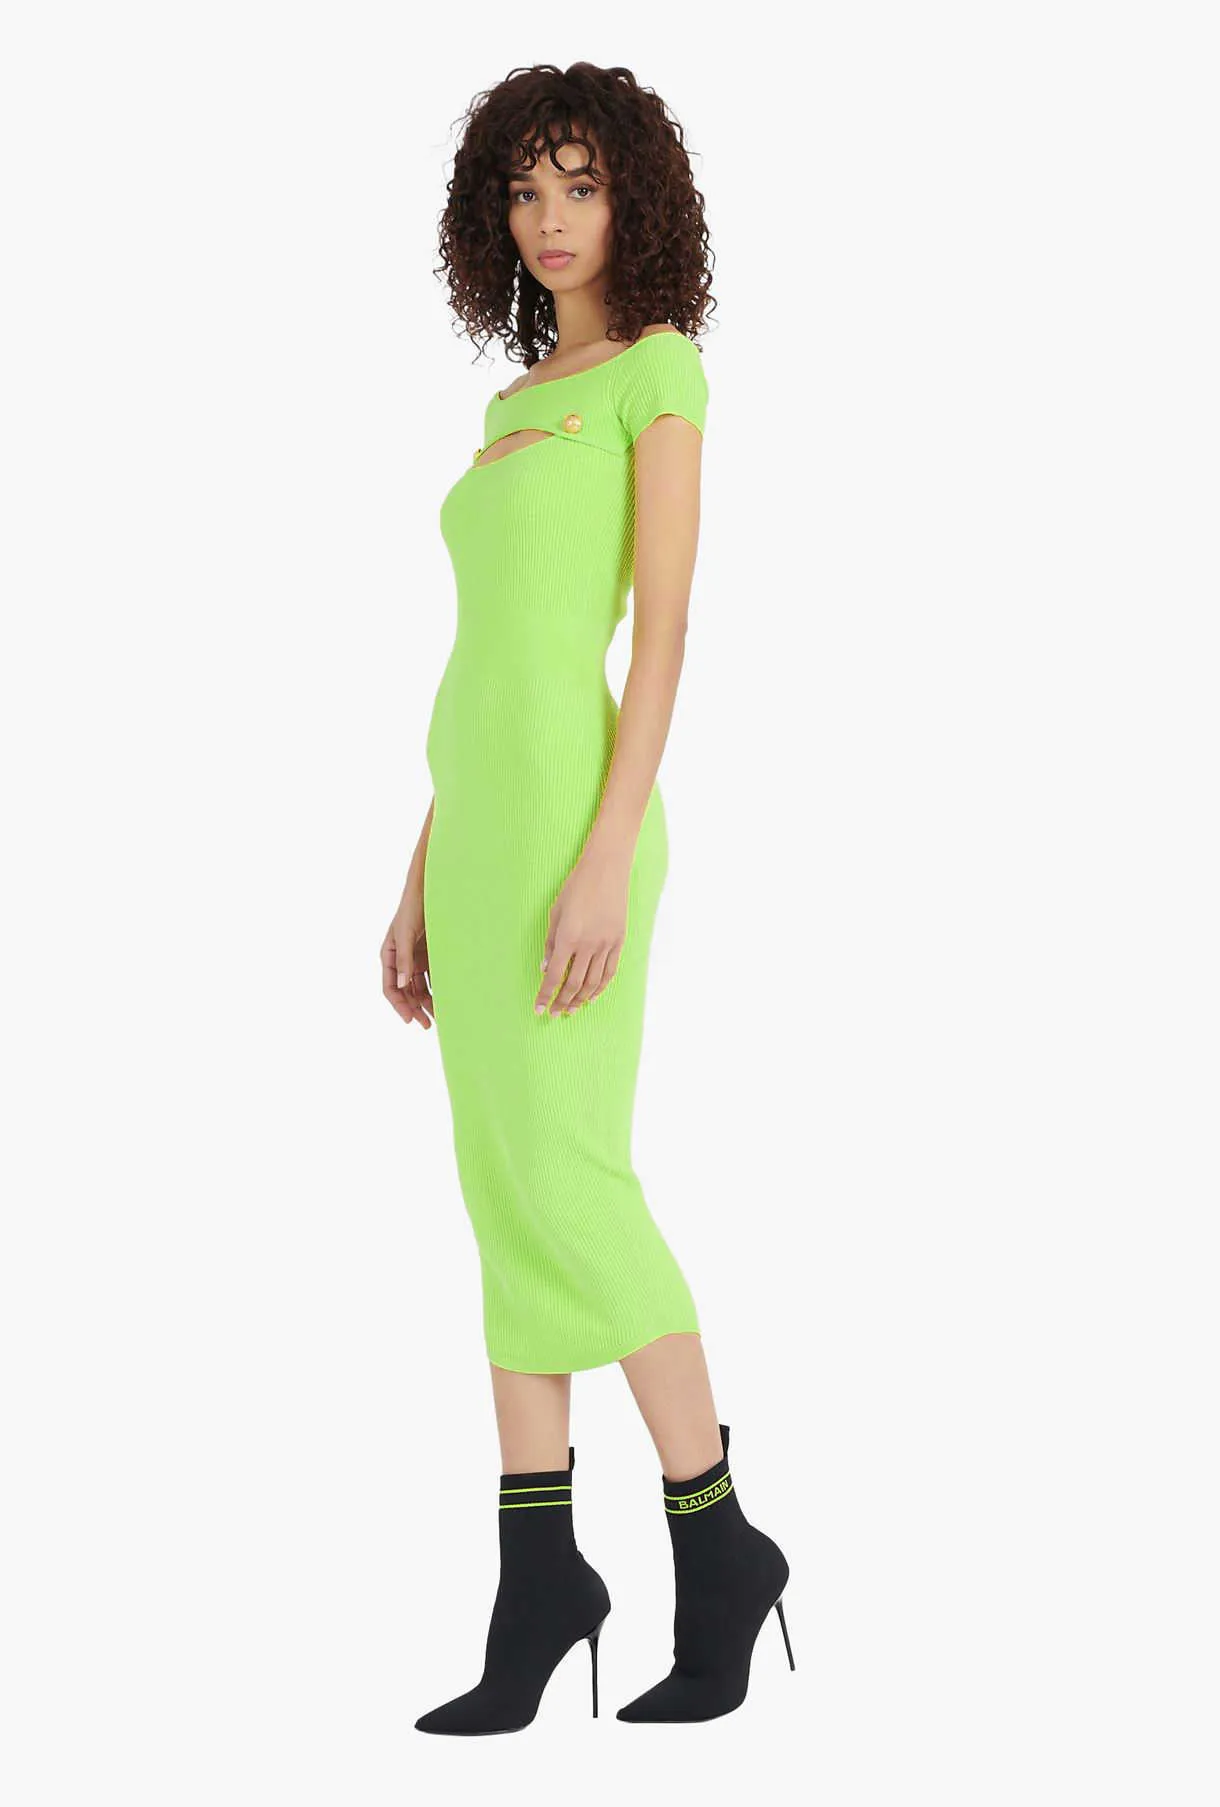 Ocsstrade Bandage Платье Прибытие неоновый Зеленый Bodycon Женщины Летний Сексуальный Вырезать Midi Party Club Outfits 210527